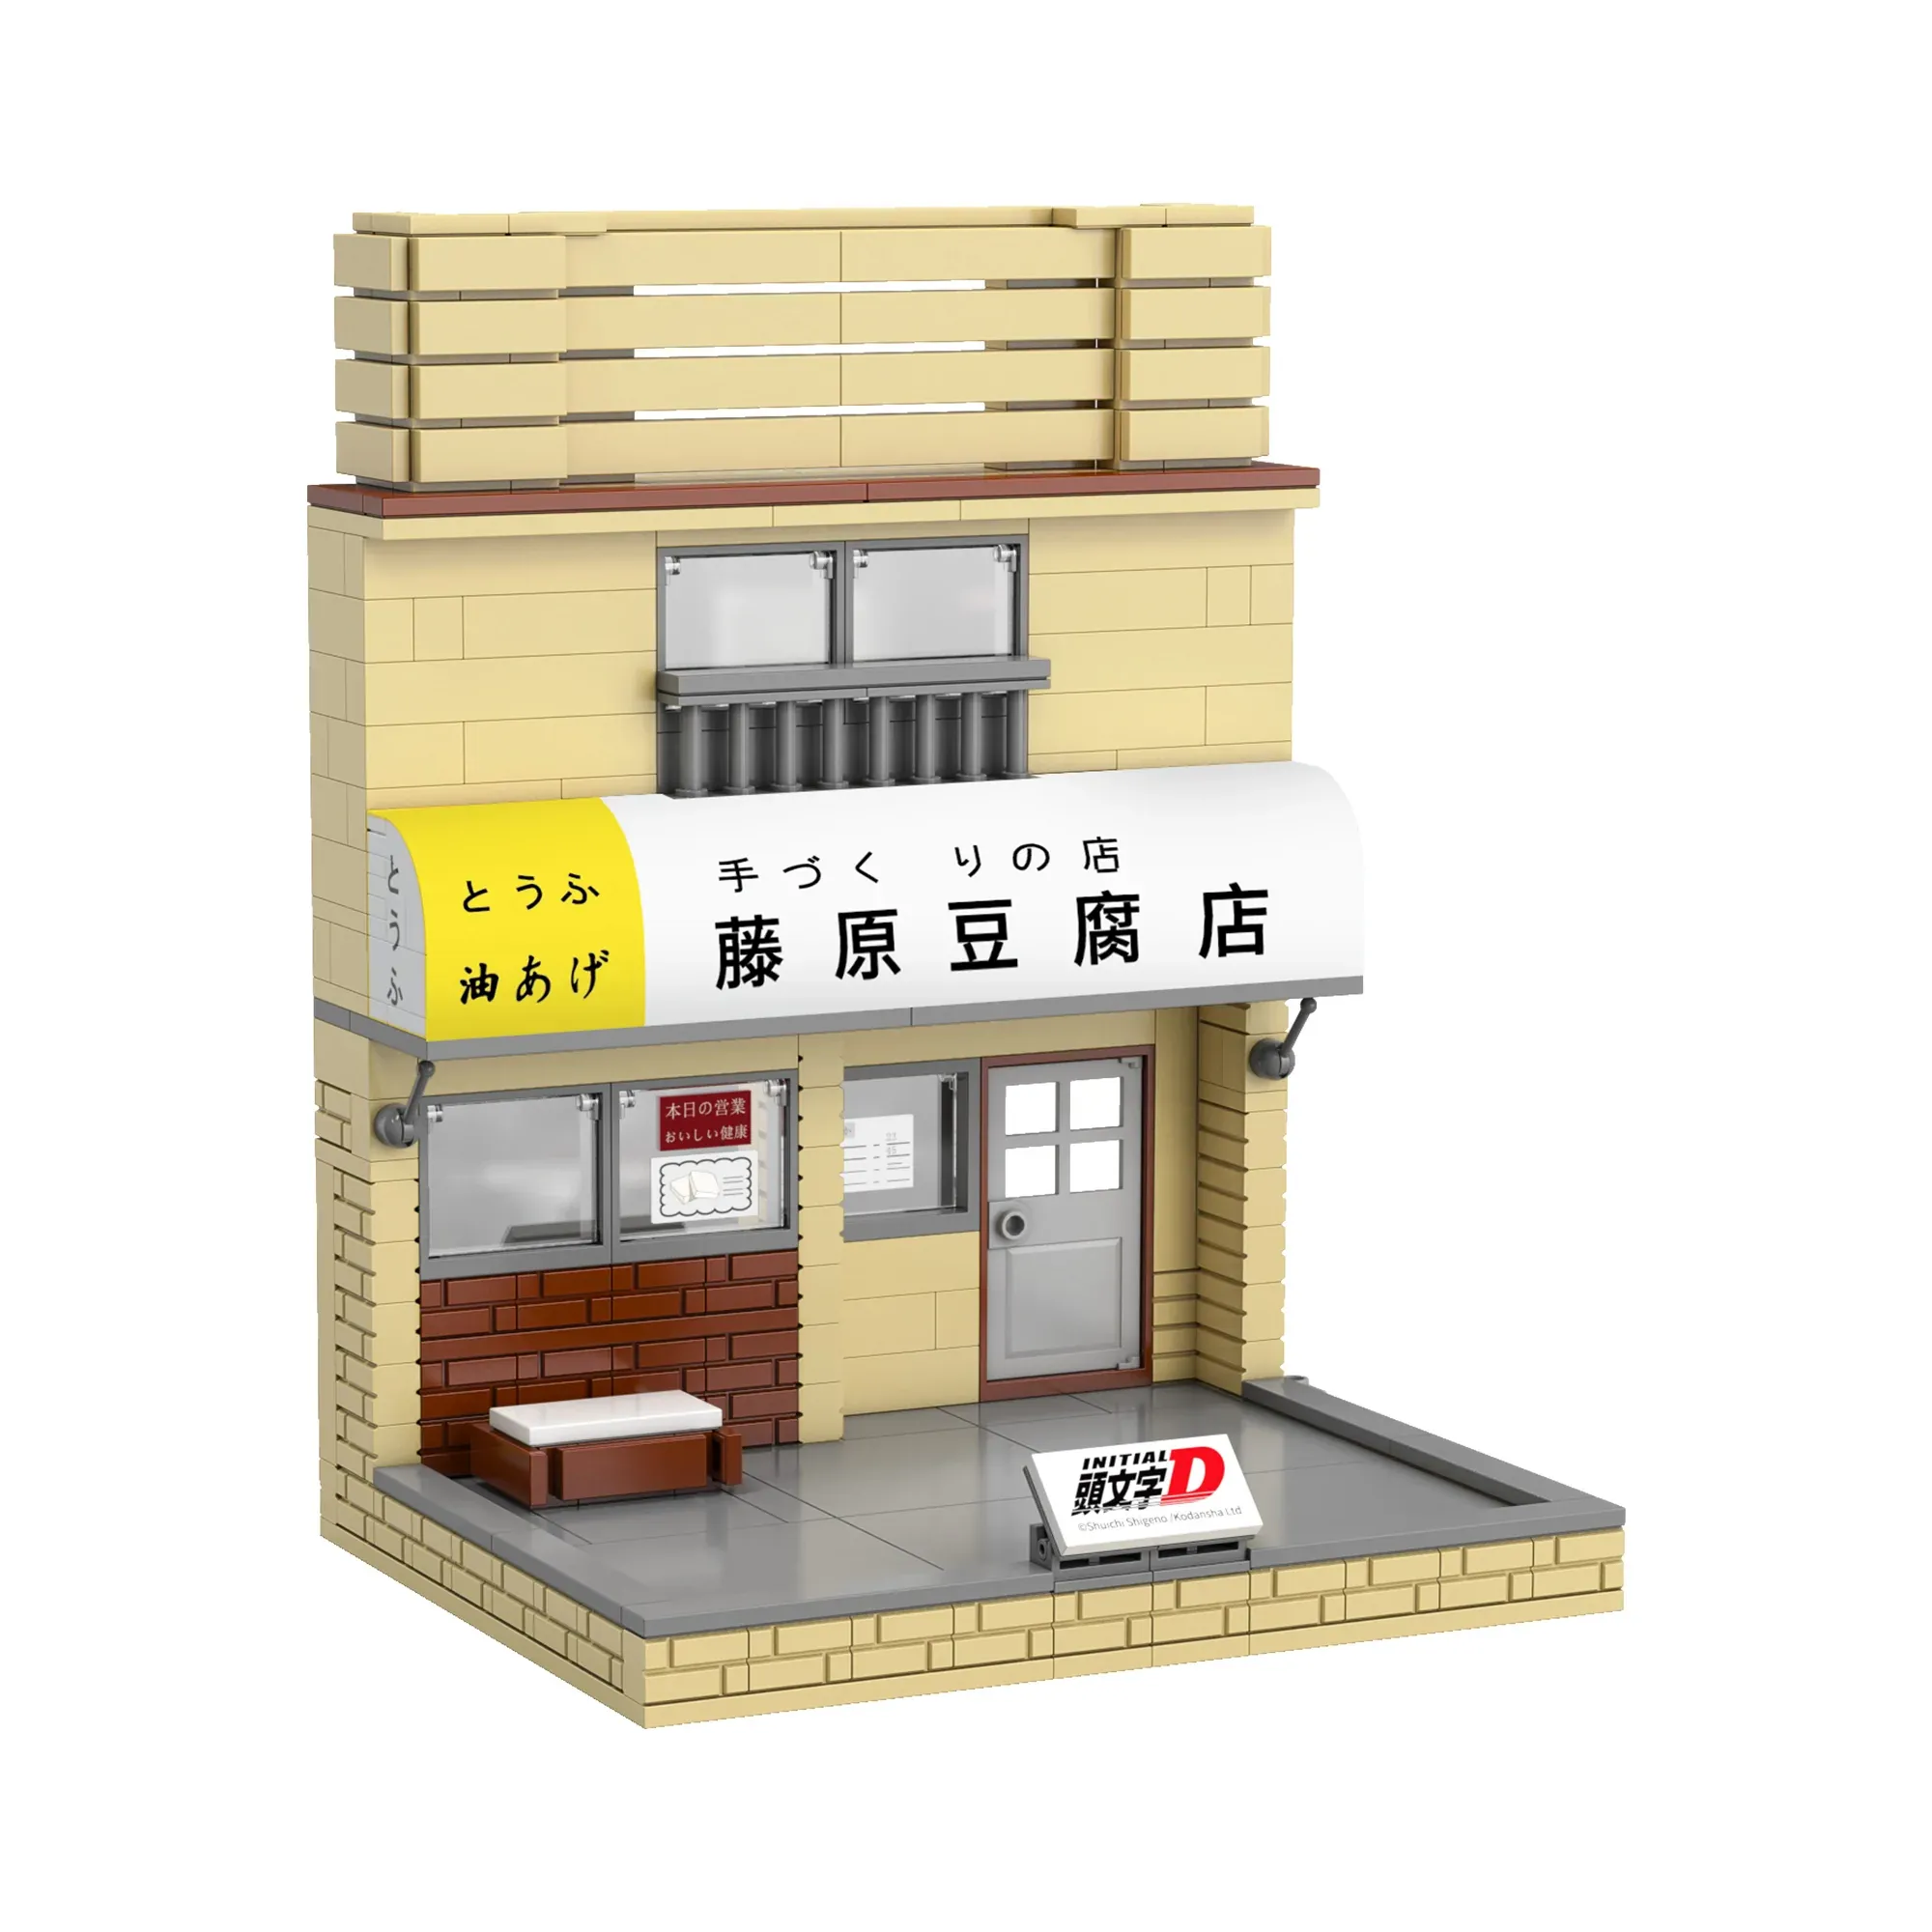 CaDA - Initial-D Fujiwara's Tofu Shop | Set C61033W